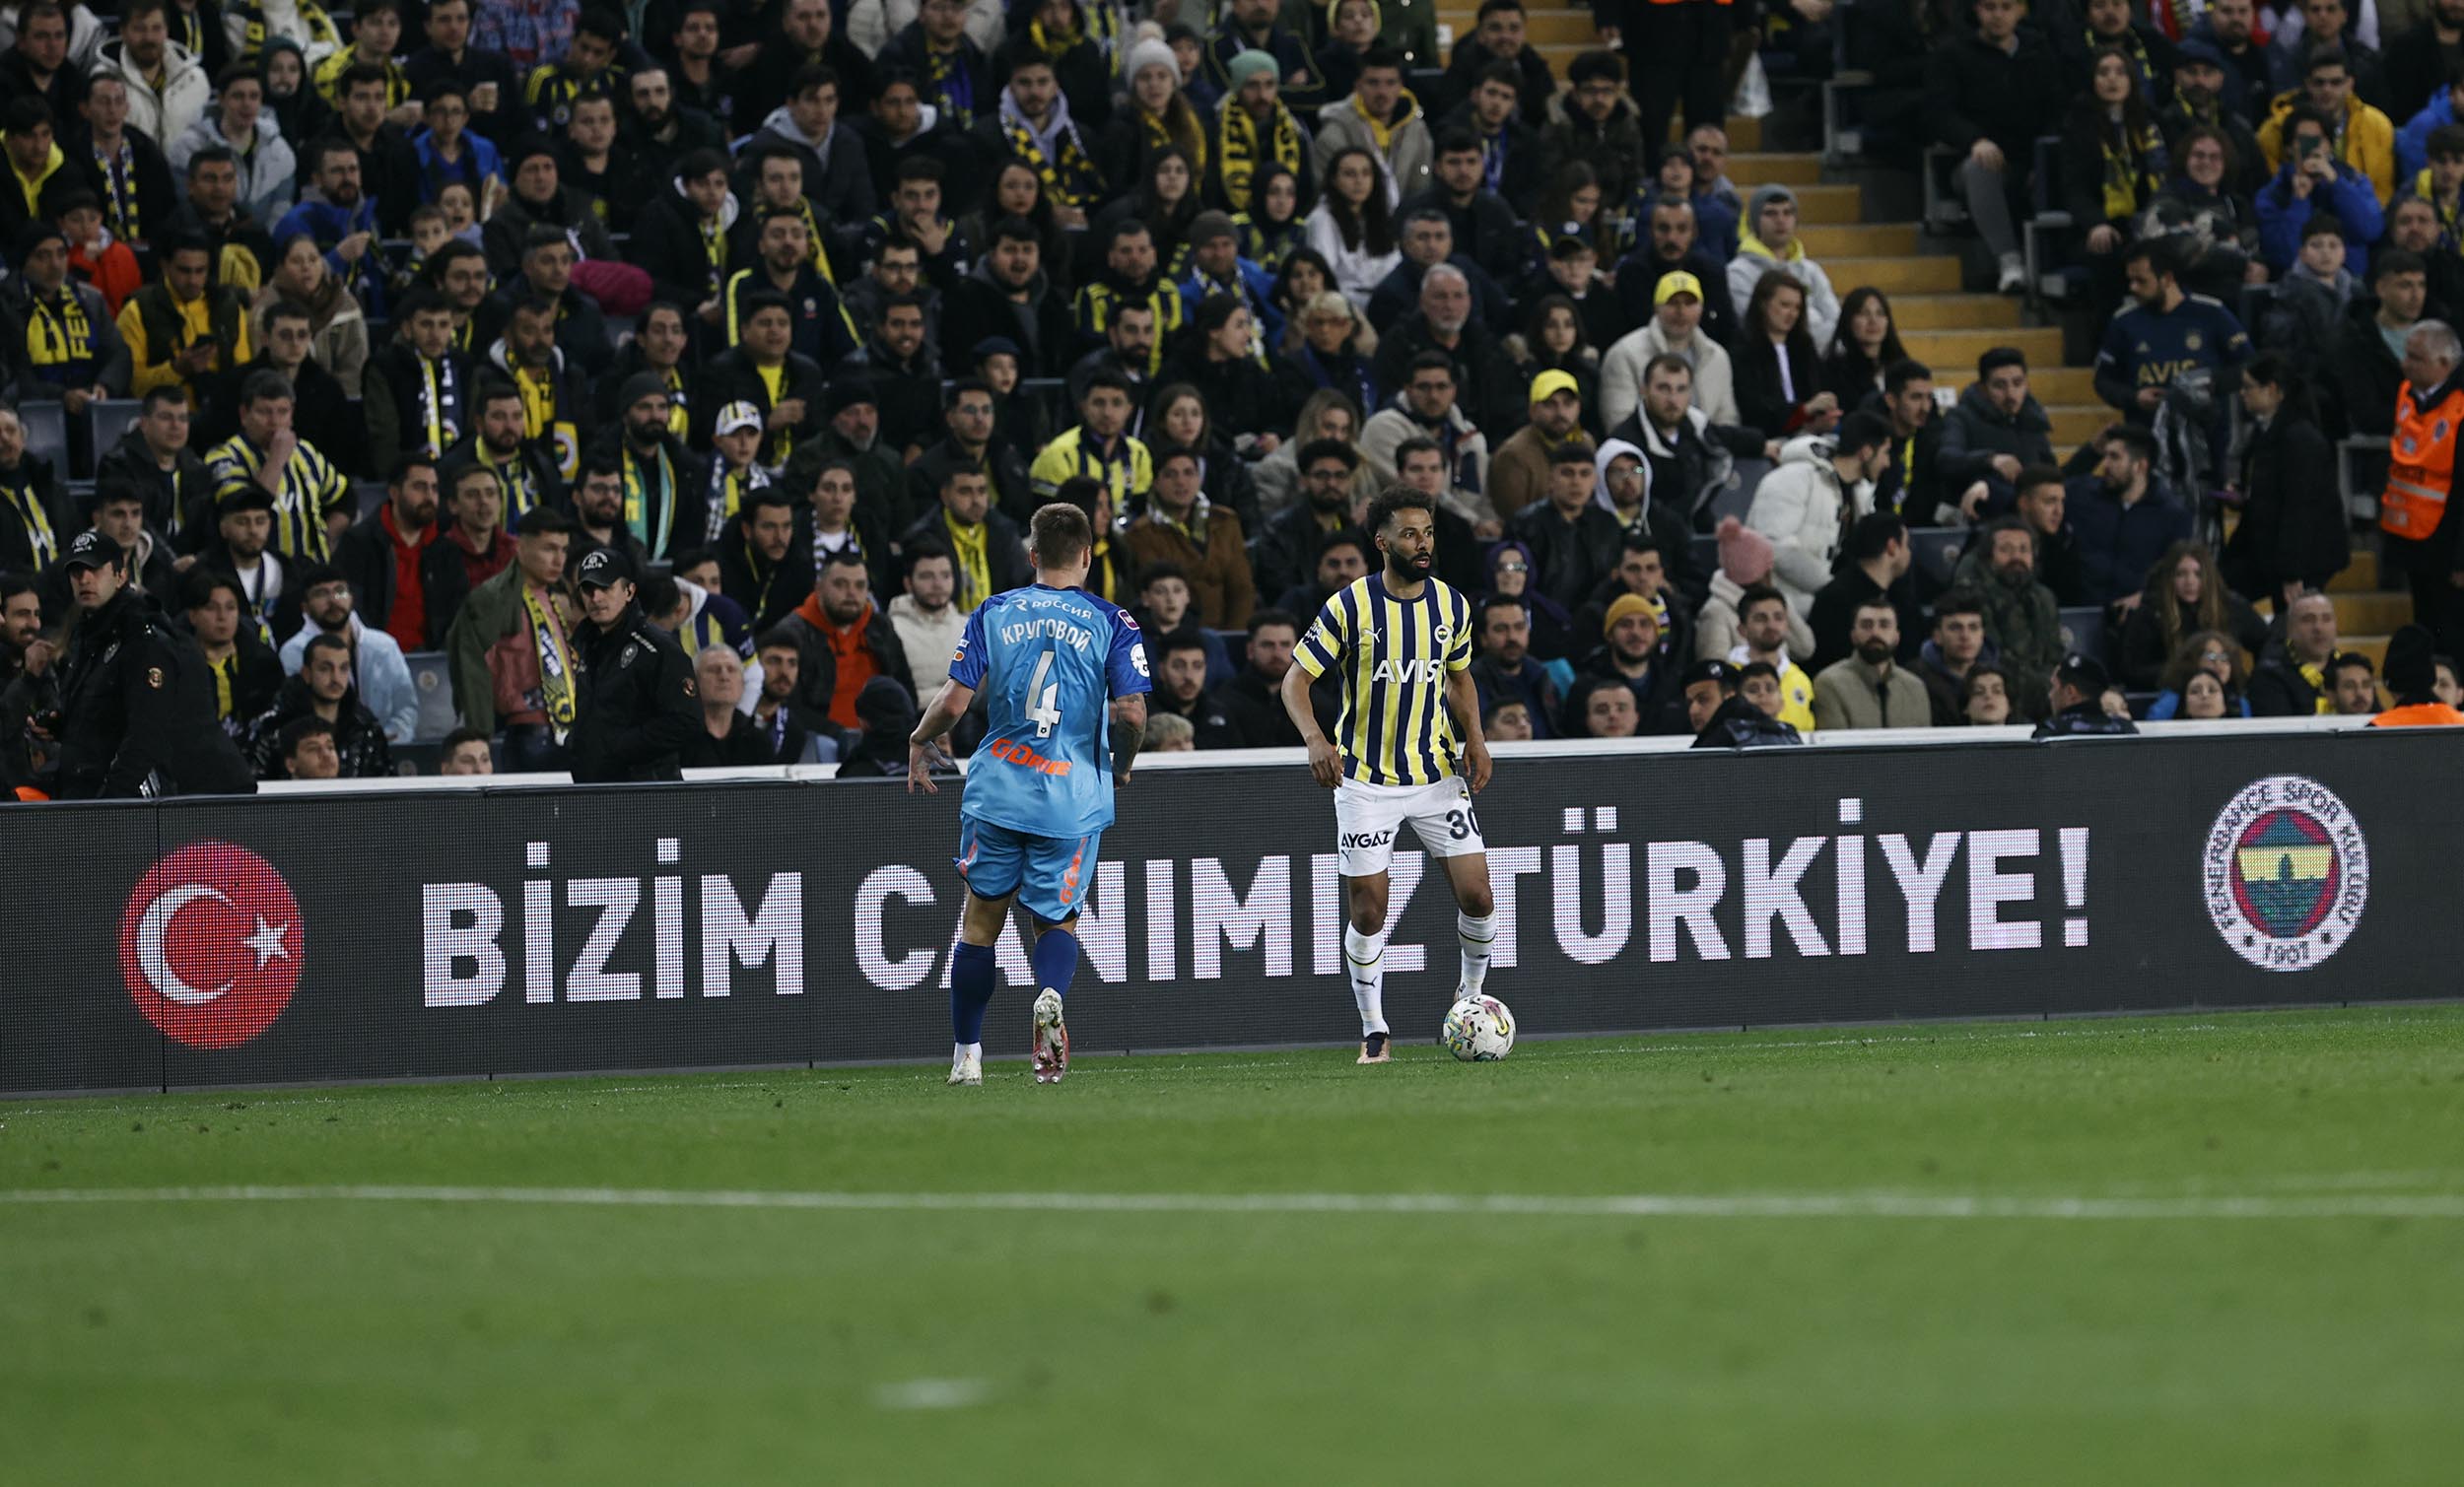 Fenerbahçemiz, geliri afet bölgesindeki vatandaşlarımıza bağışlanacak özel maçta Zenit’i ağırladı